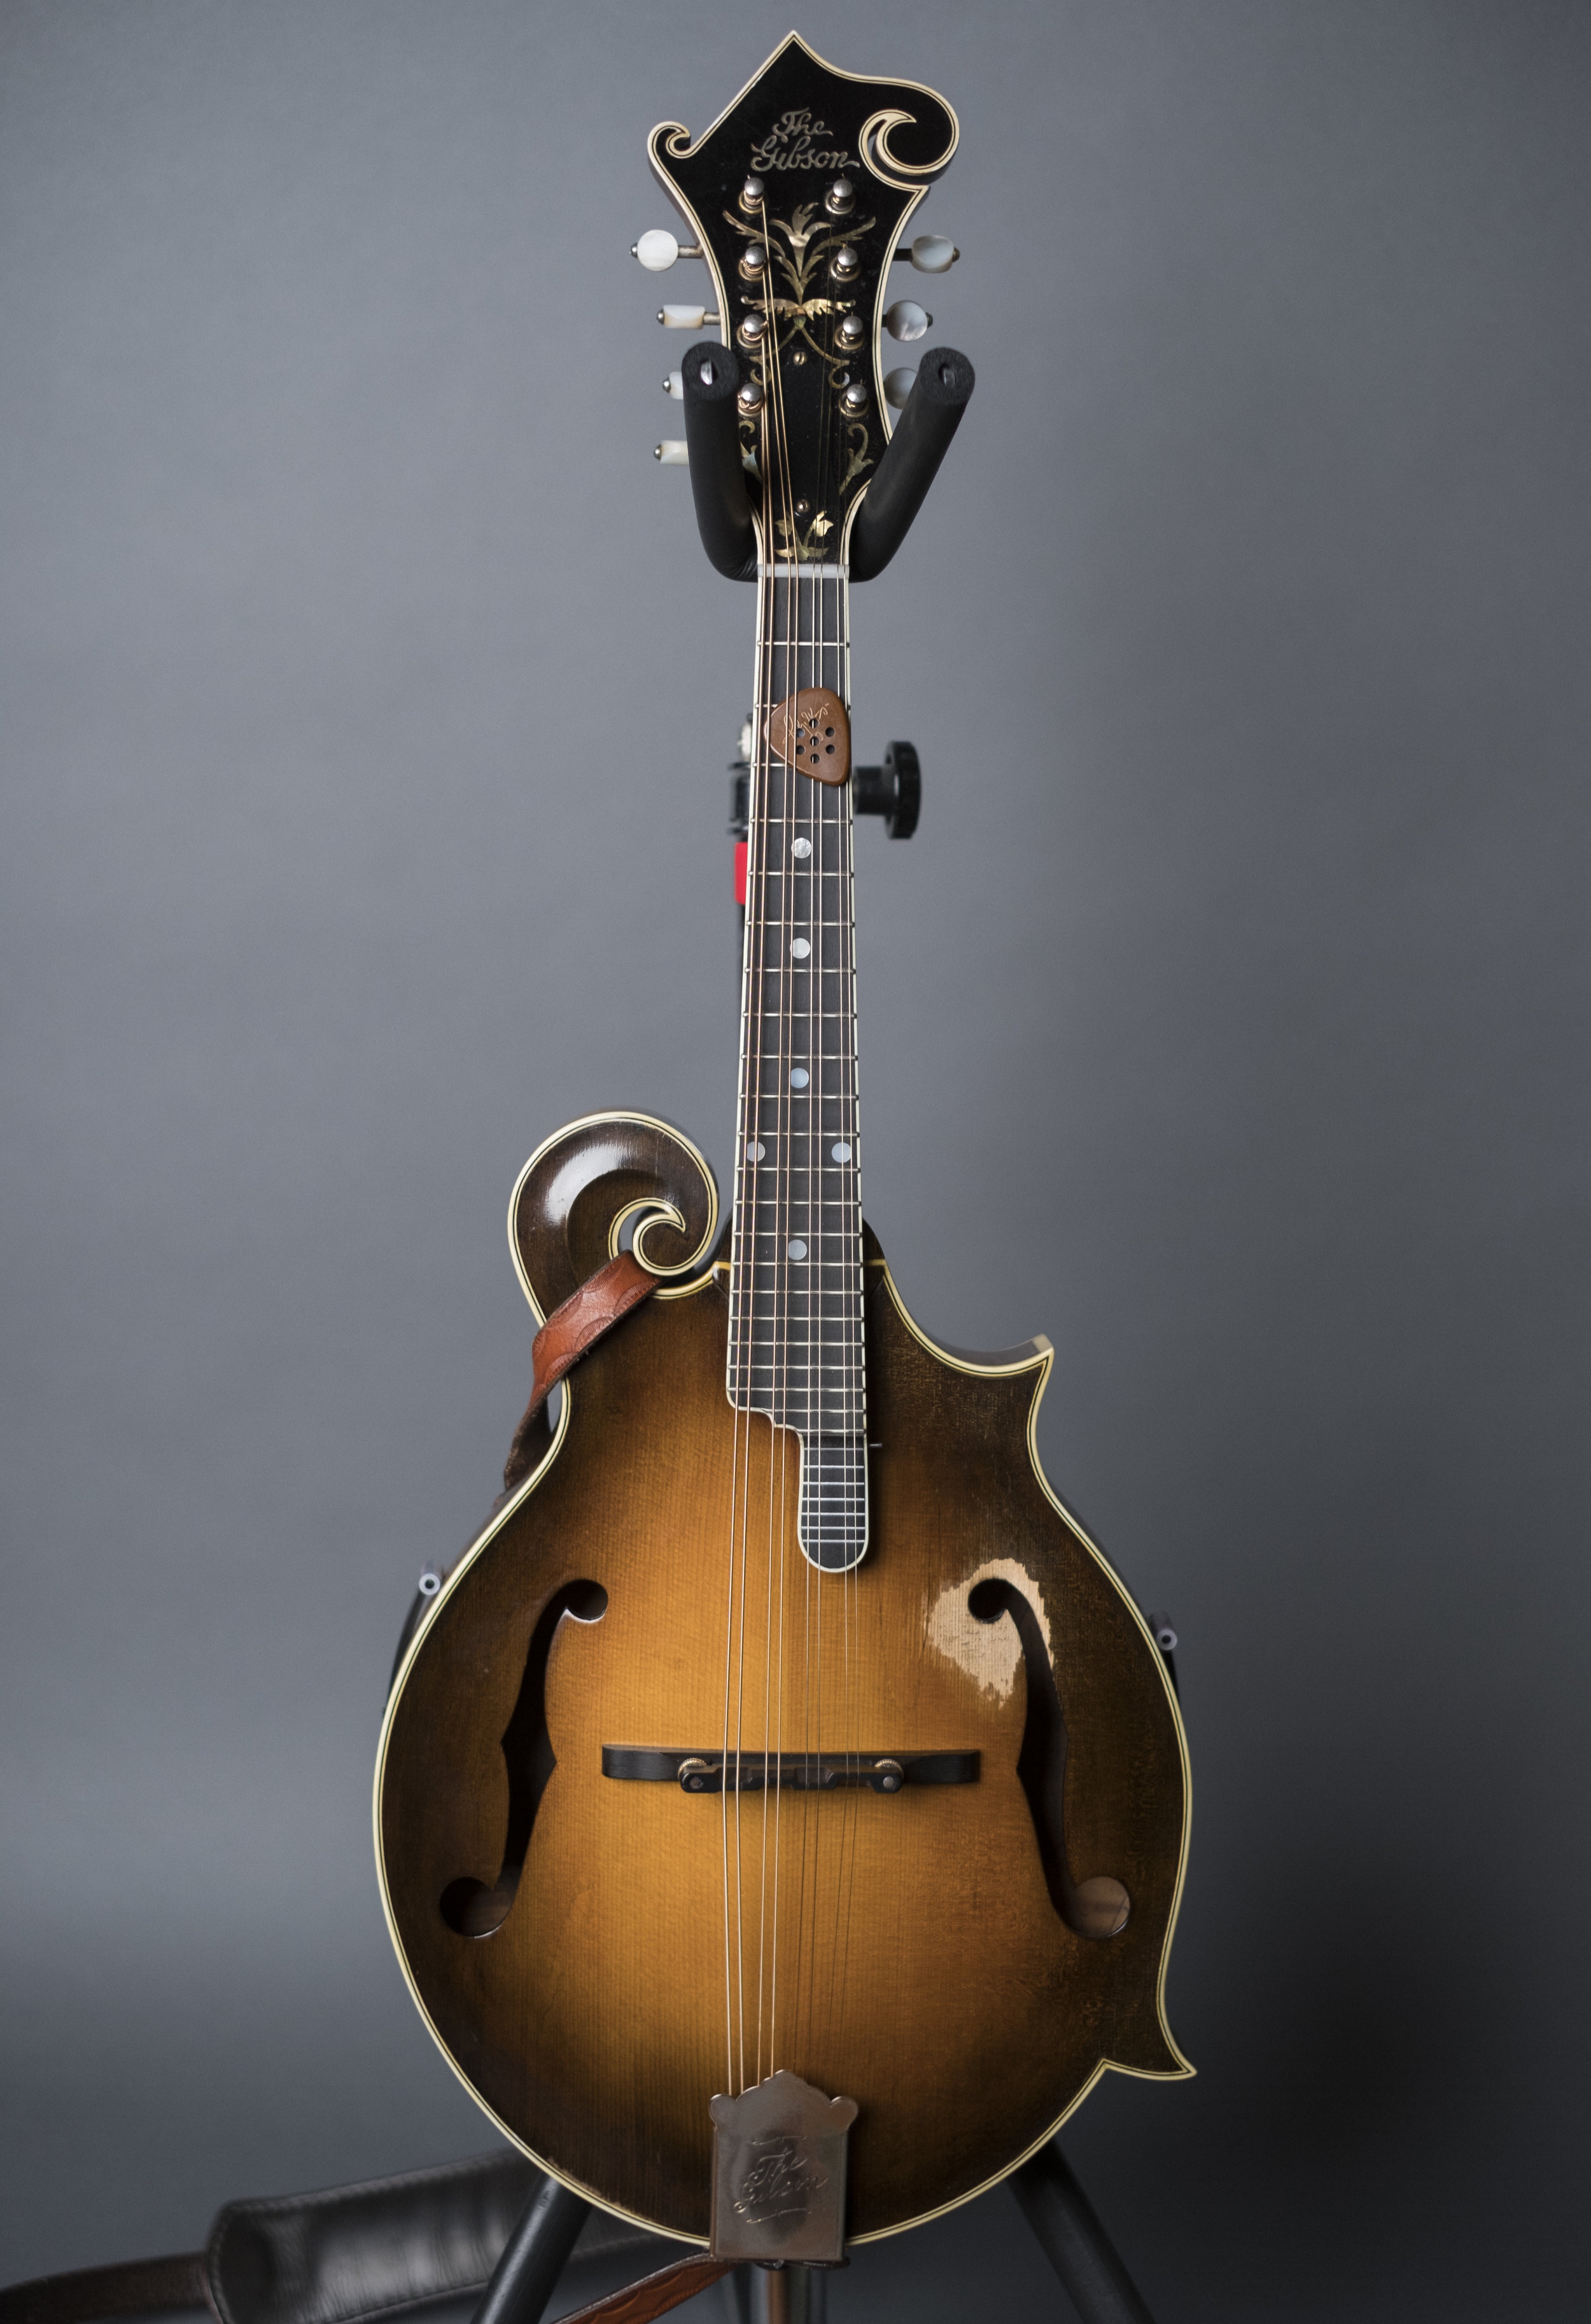 Ricky Skagg's 1922 Gibson Loar F5